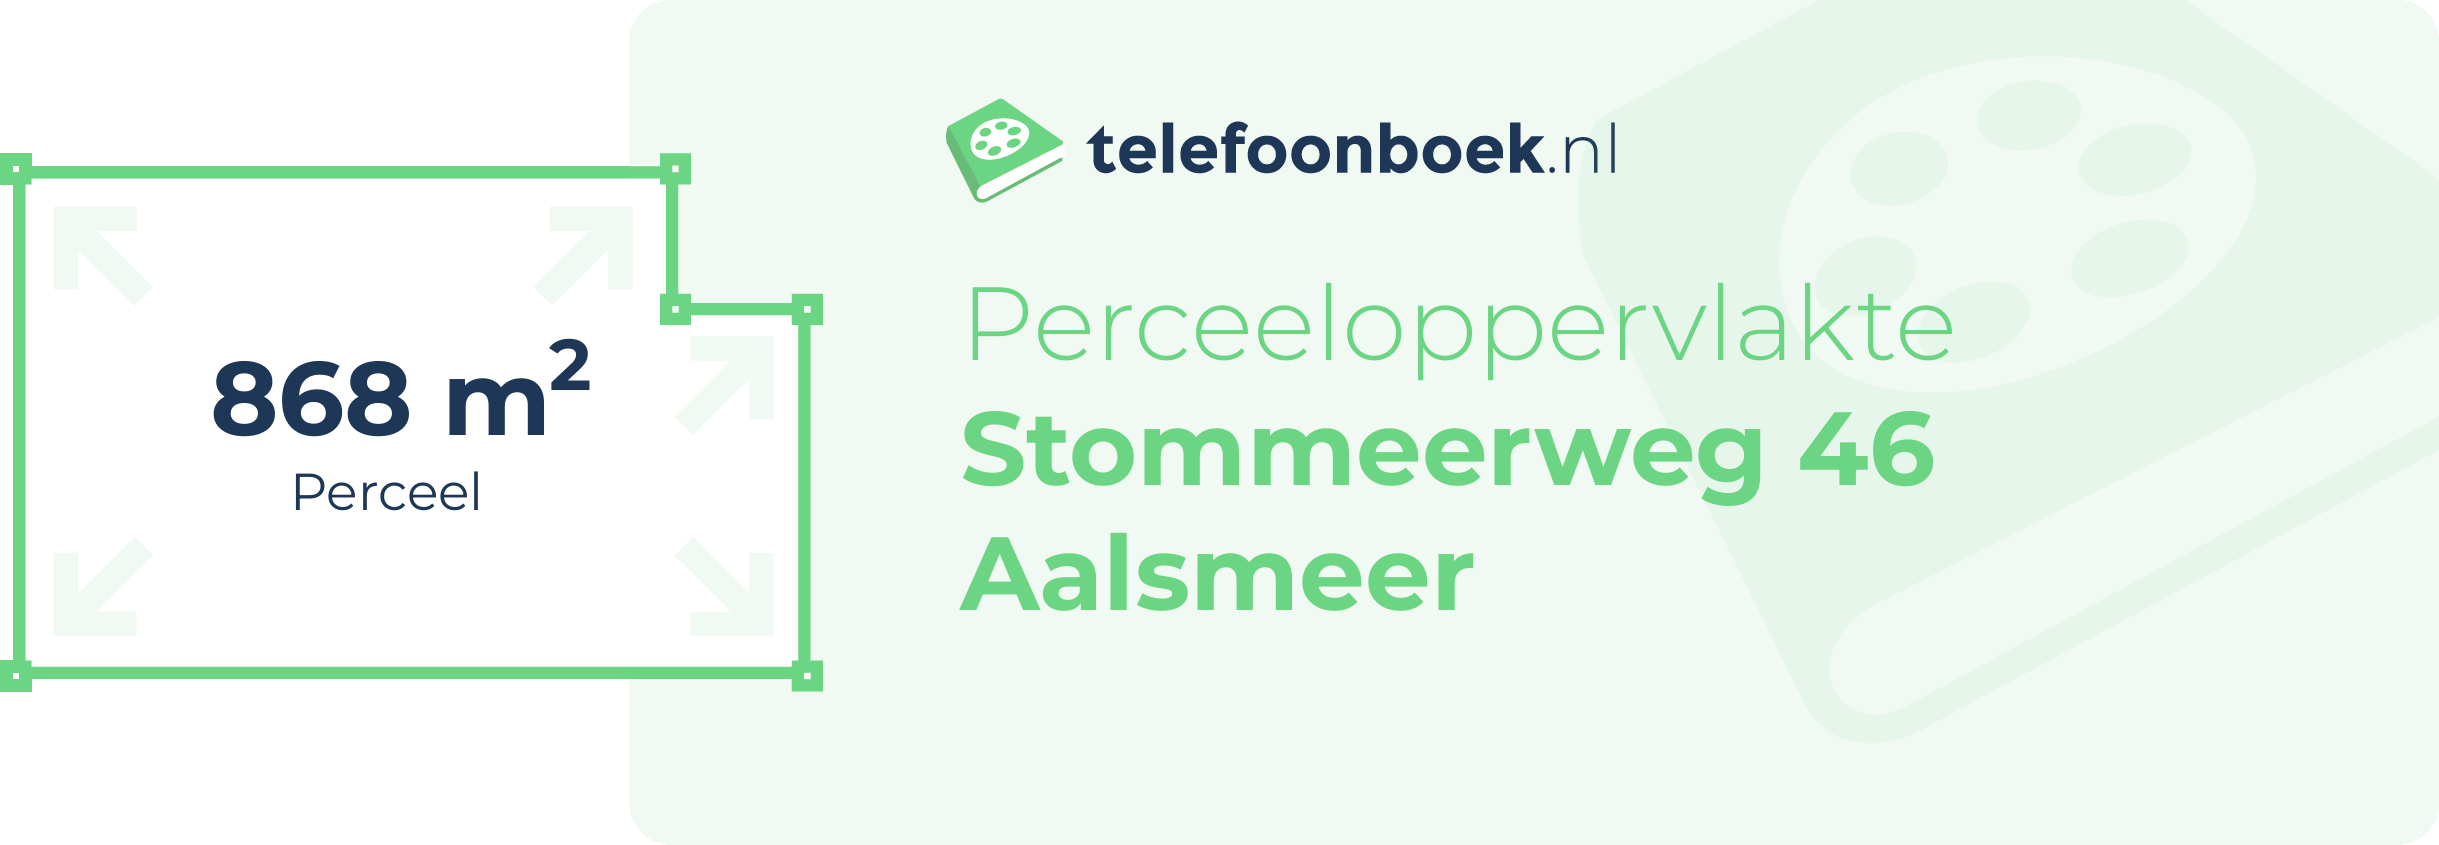 Perceeloppervlakte Stommeerweg 46 Aalsmeer